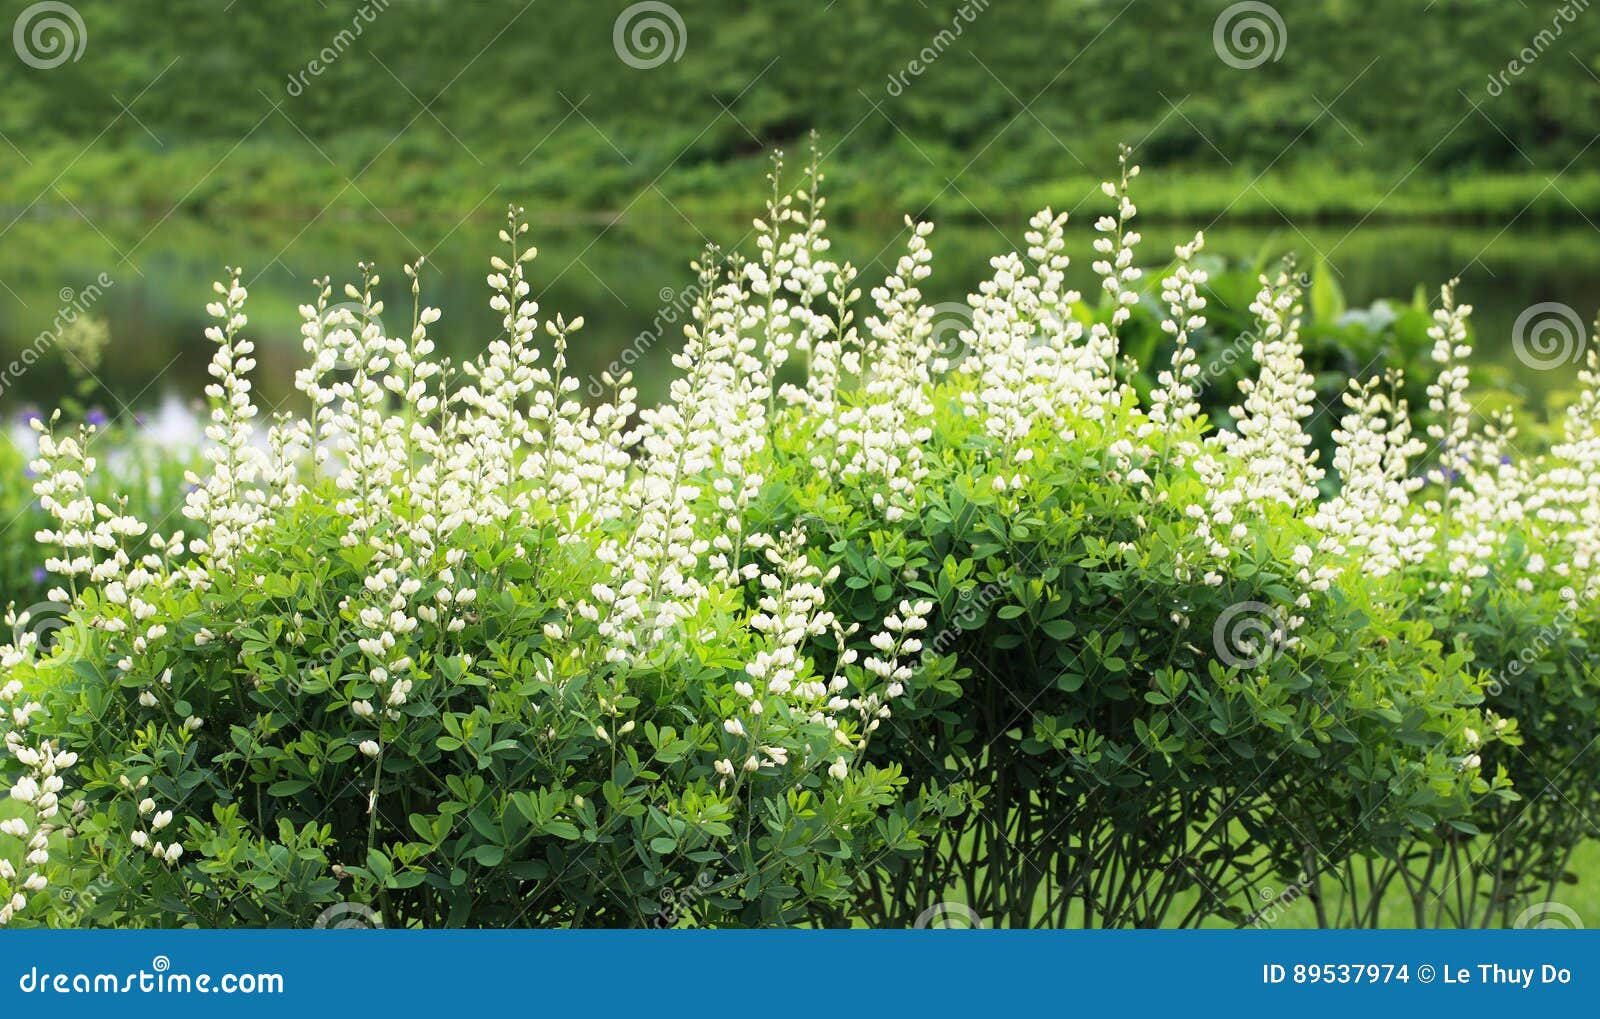 baptisia alba flower